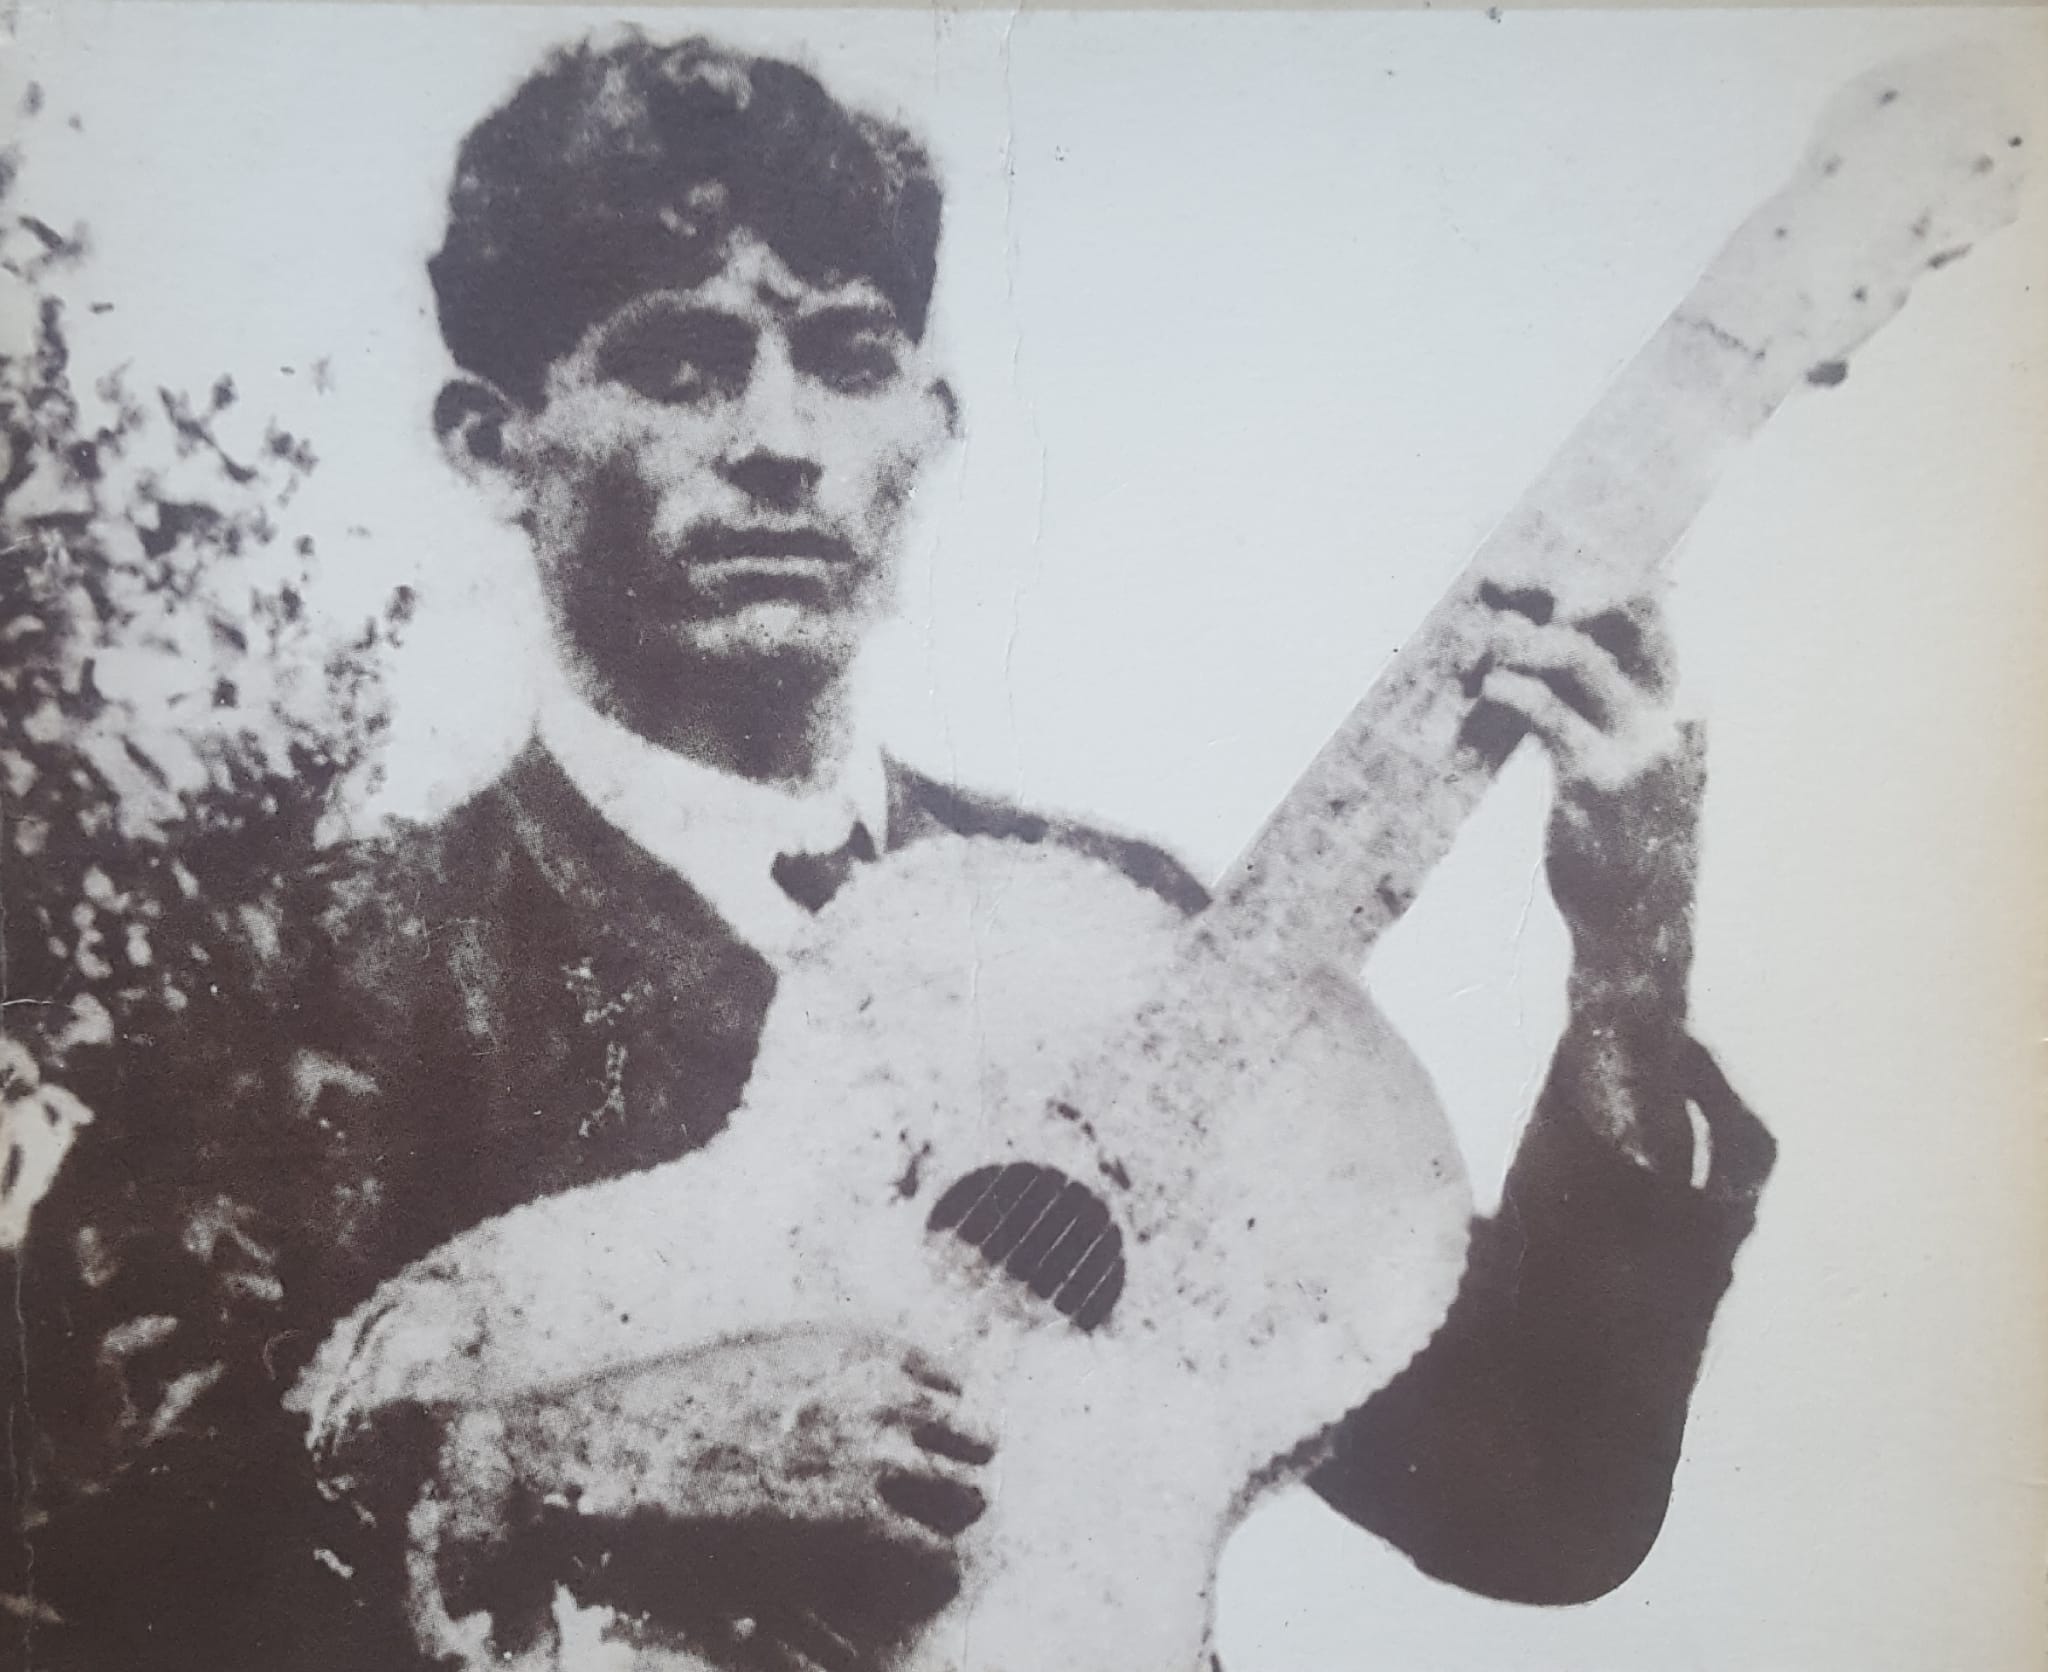 Foto antiga, em preto e branco, com sinais de desgaste, de um homem jovem de cabelos escuros e lisos, segurando um violão inclinado para cima.